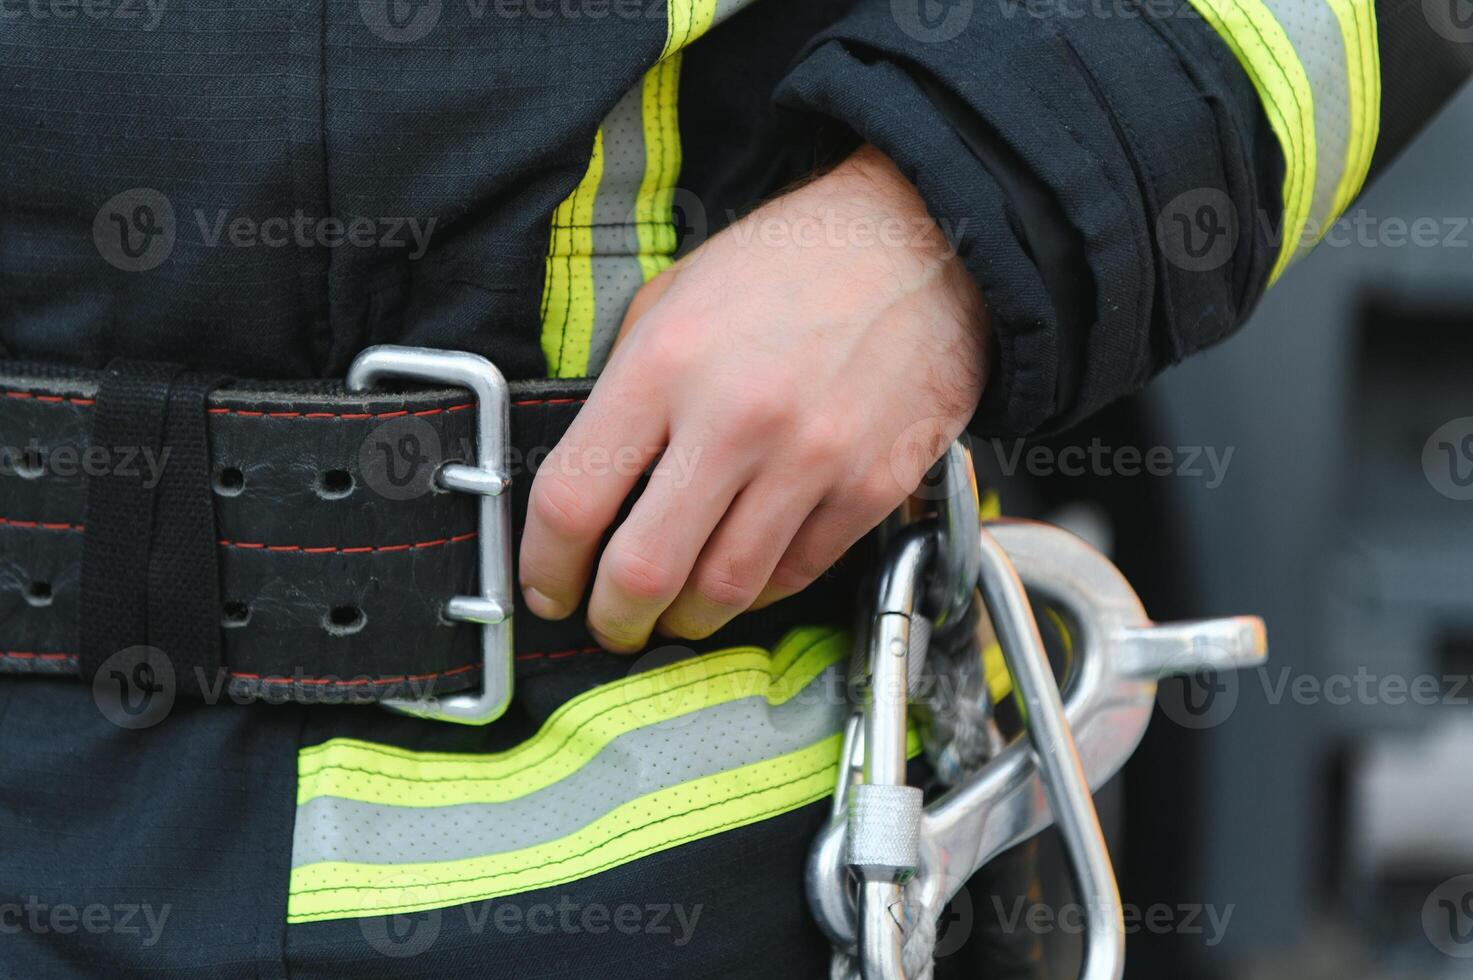 détails avec le mousqueton et harnais de une sapeur pompier photo